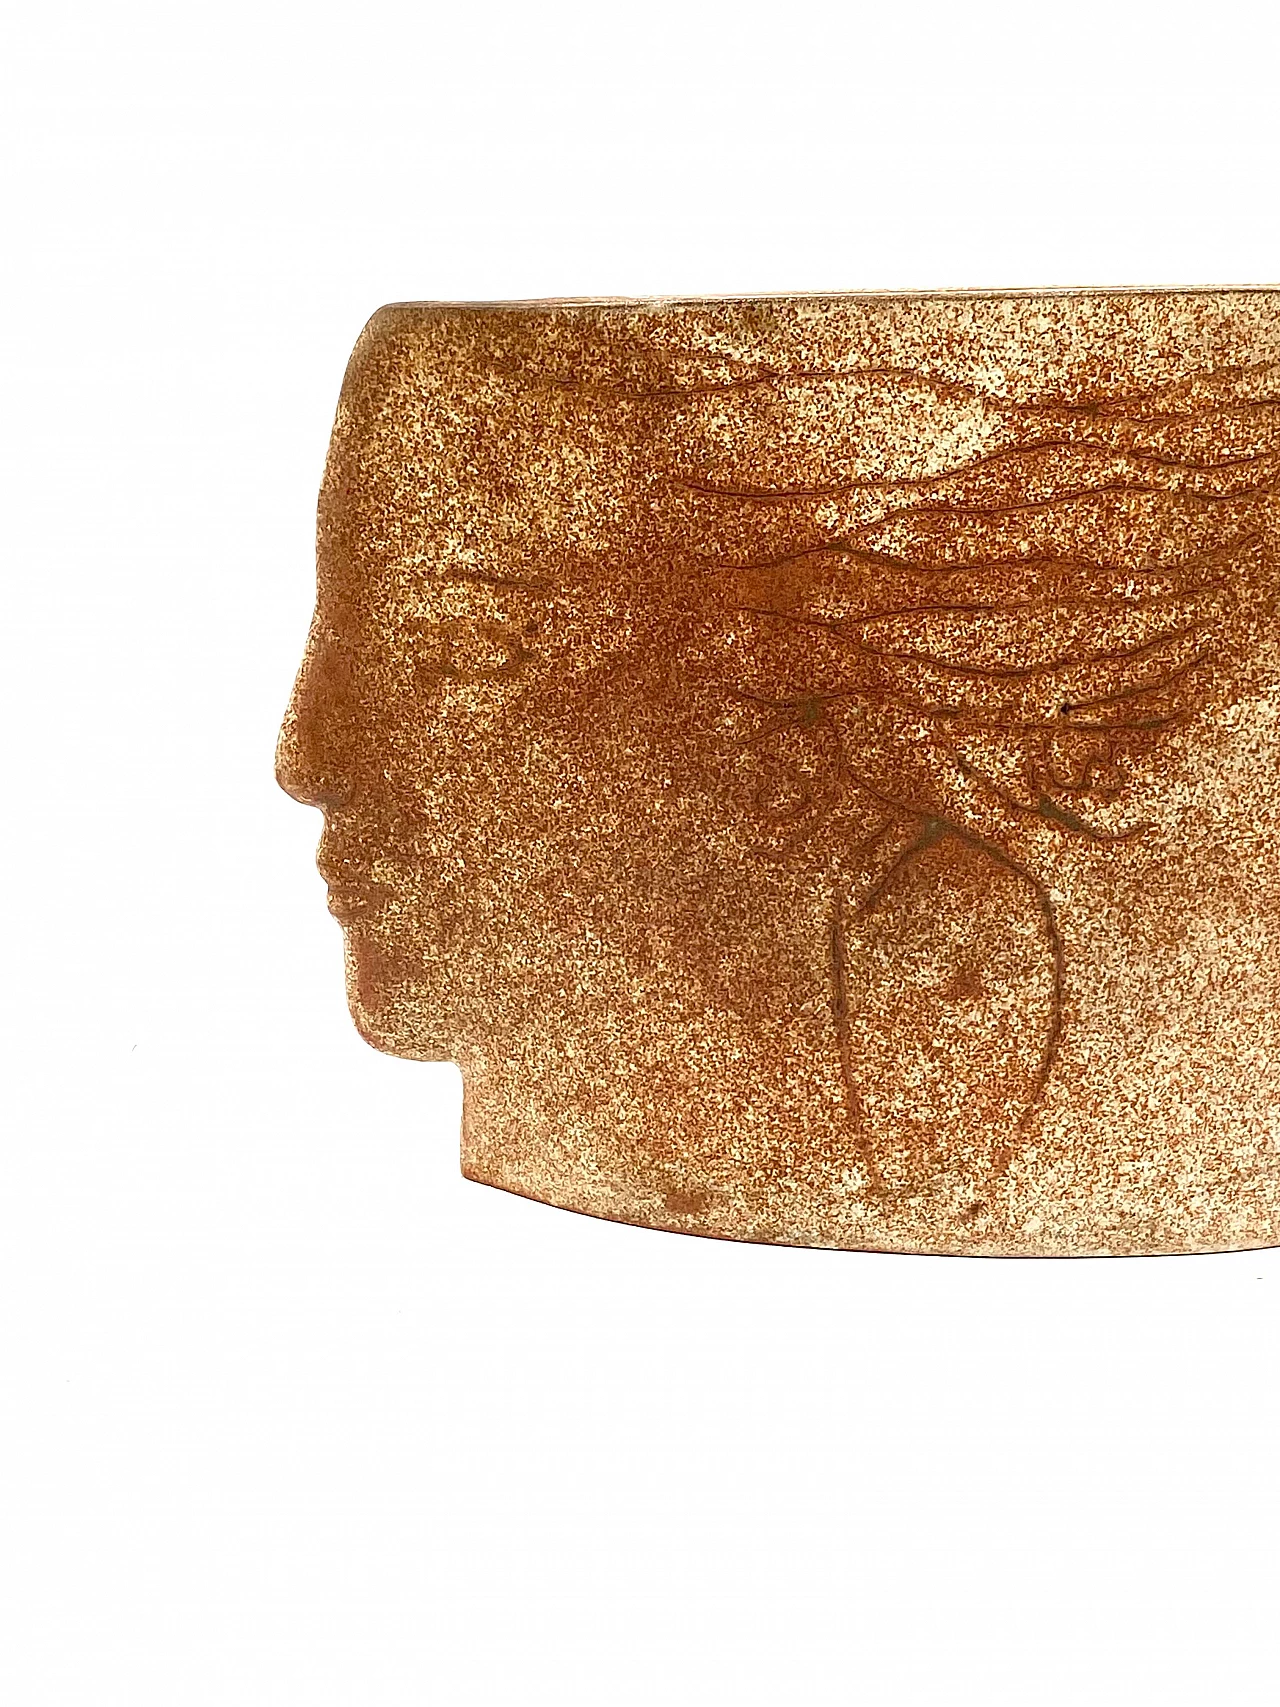 Vaso in ceramica Visages, anni '60 26